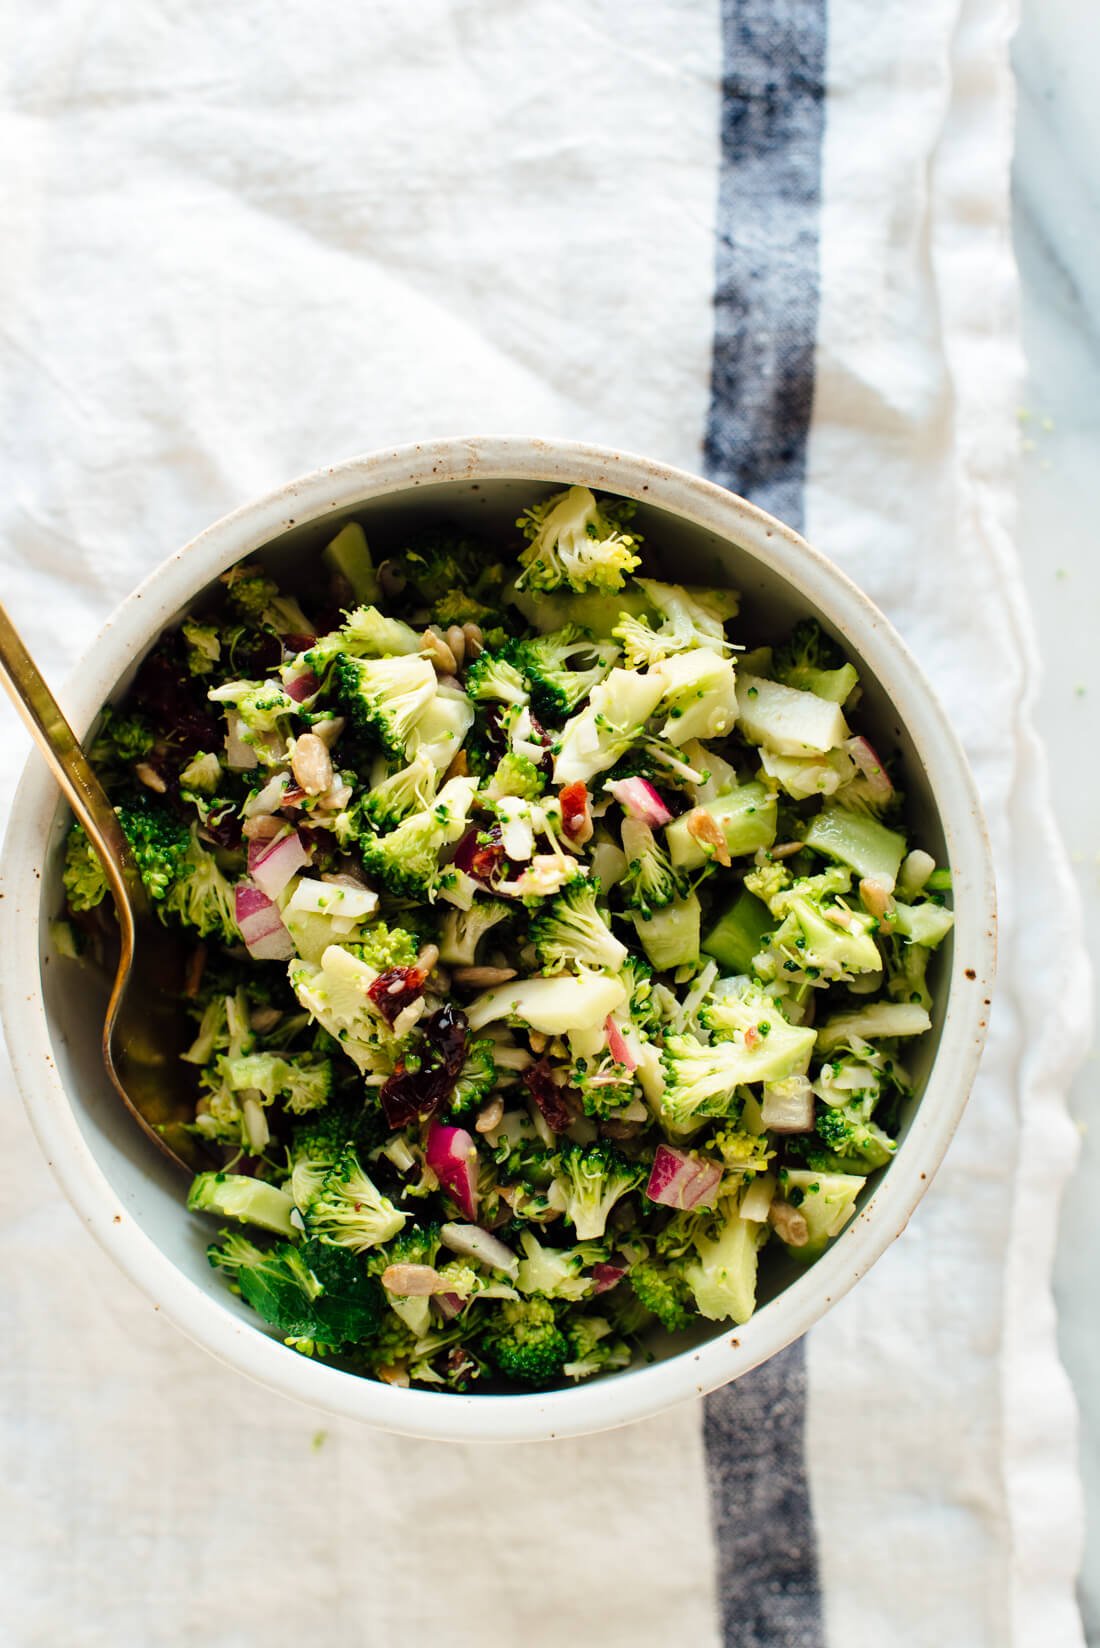 single serving of healthy broccoli salad recipe